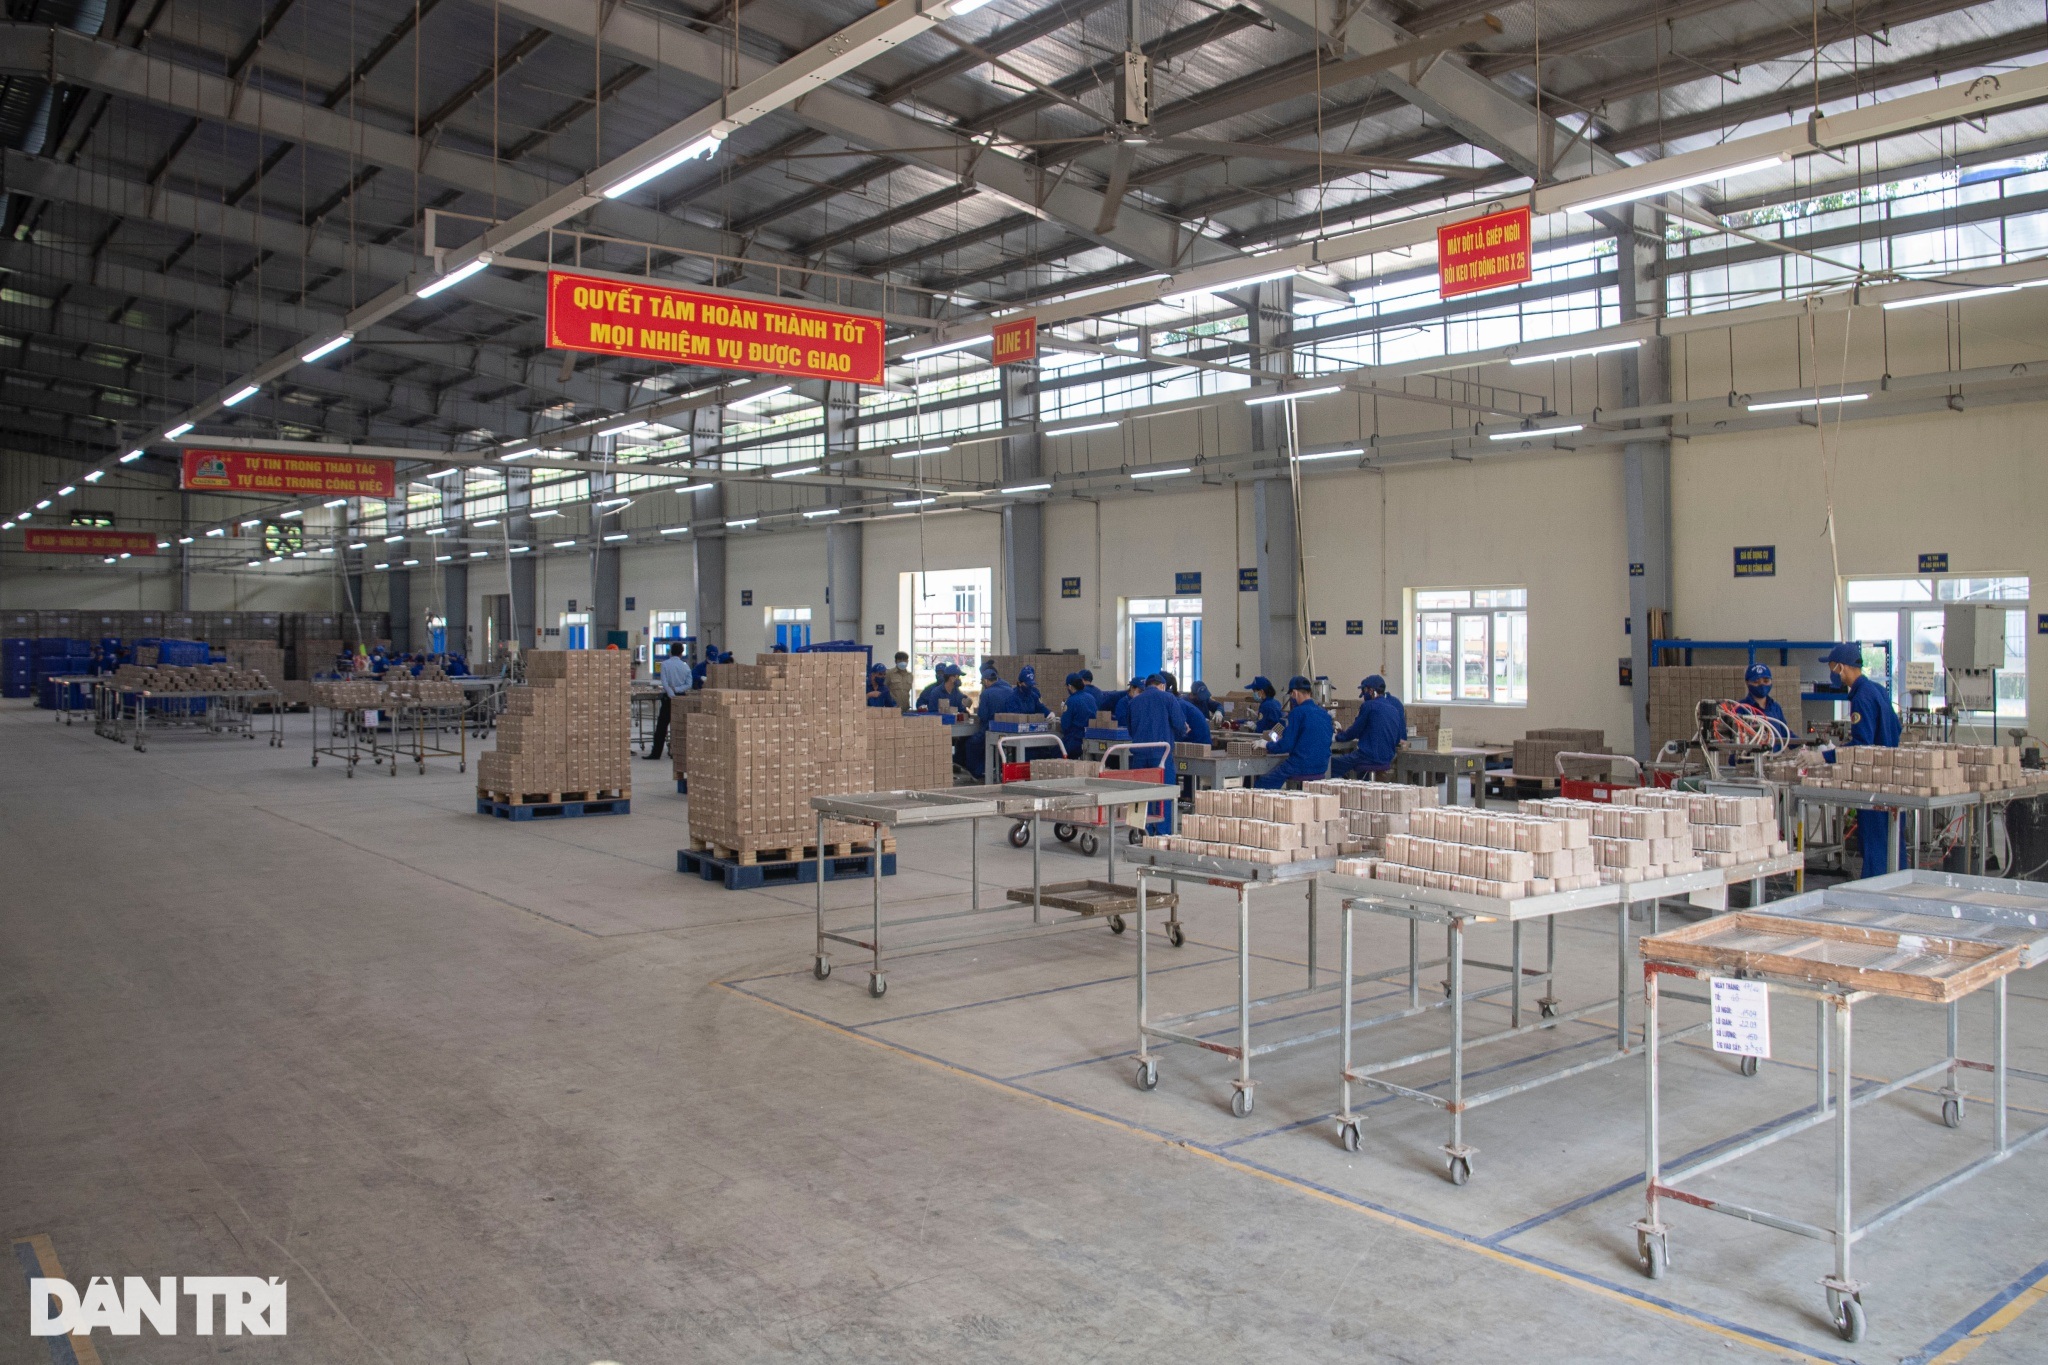 Cận cảnh quy trình sản xuất pháo hoa Việt Nam tại Nhà máy Z121 - 1